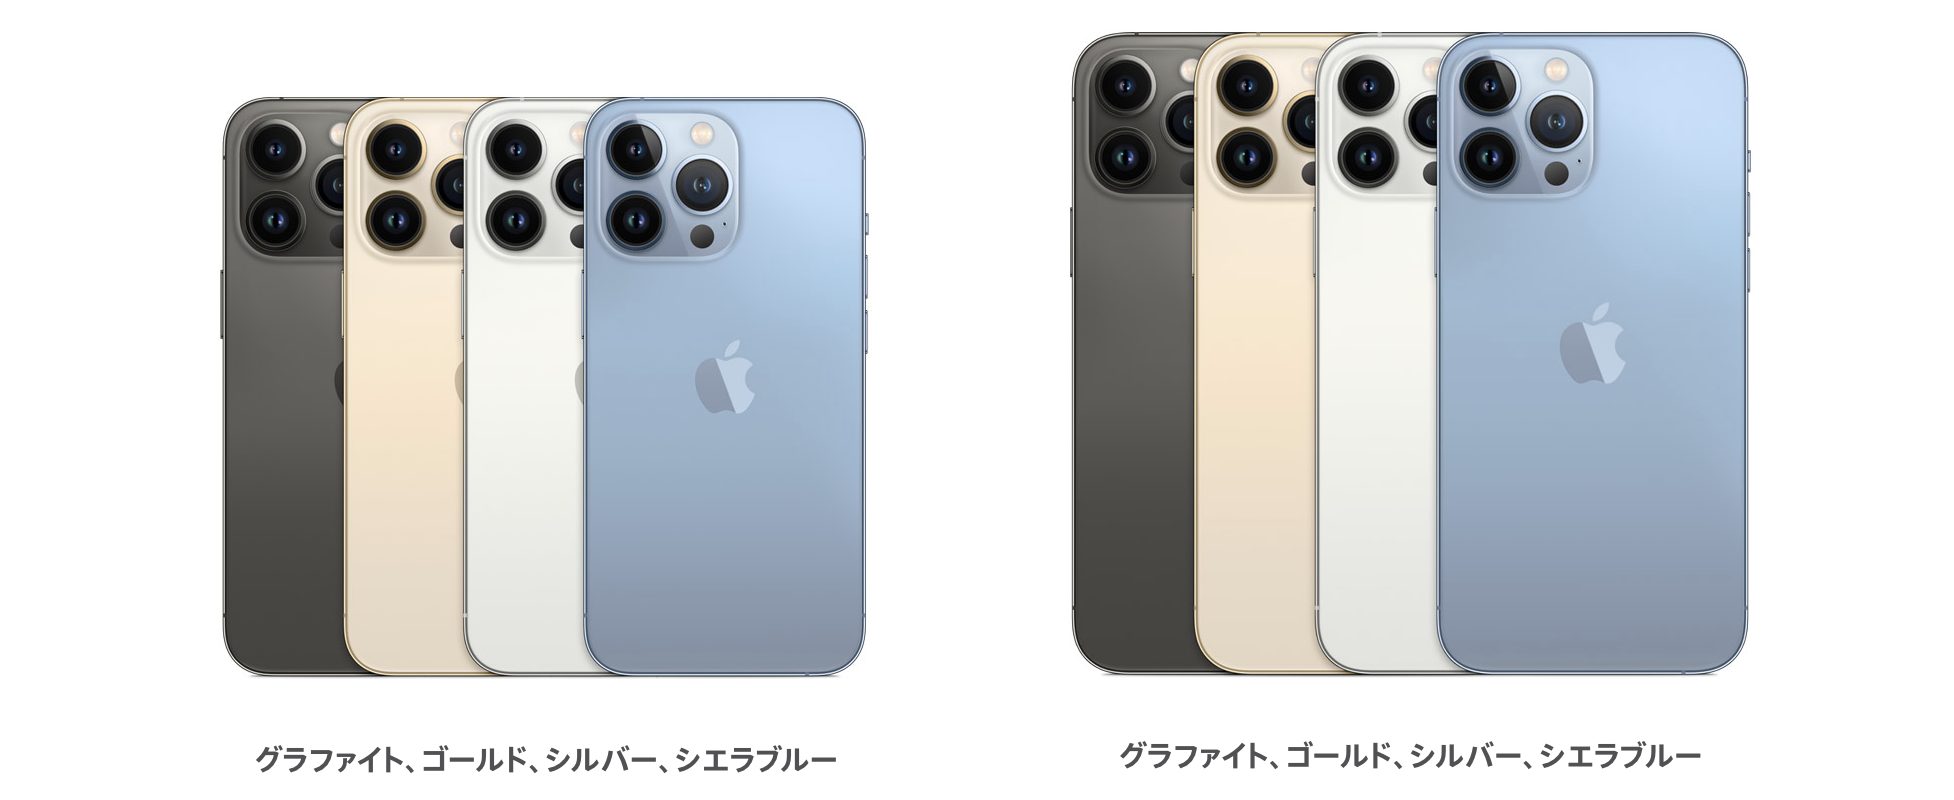 iPhone13 Proのカラー4色